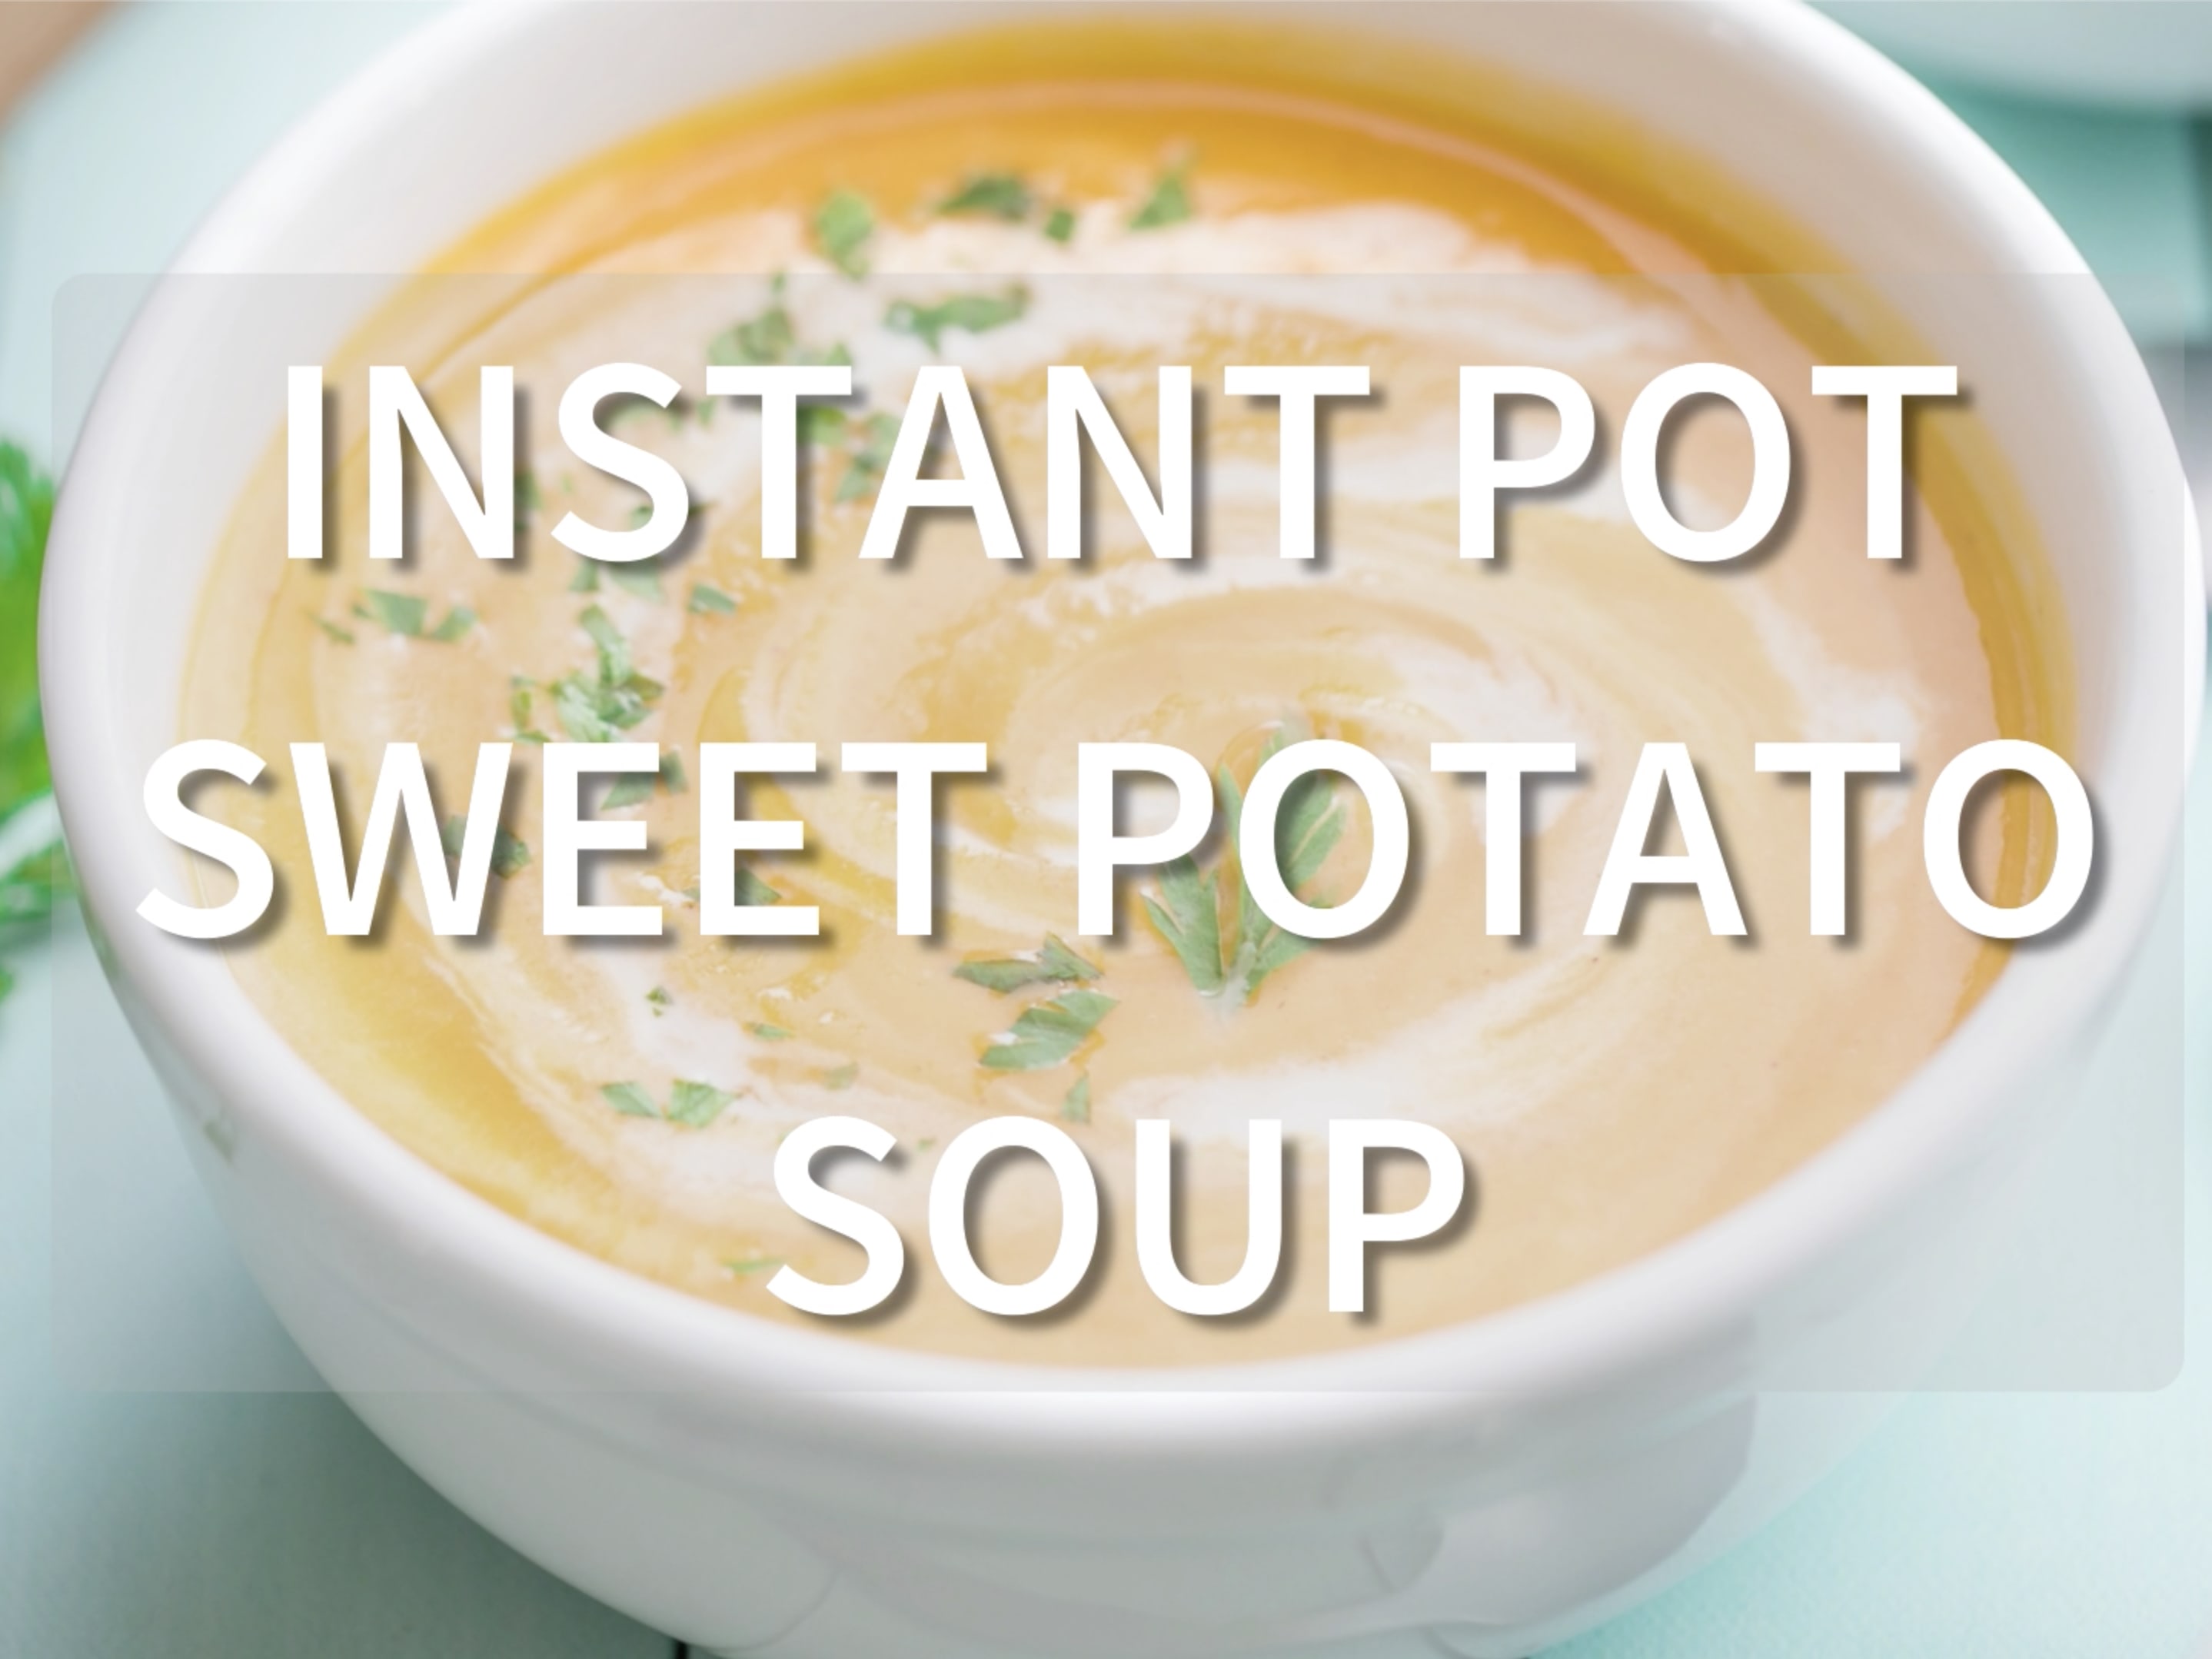 Instant Pot Vegetable Soup - Simple Joy